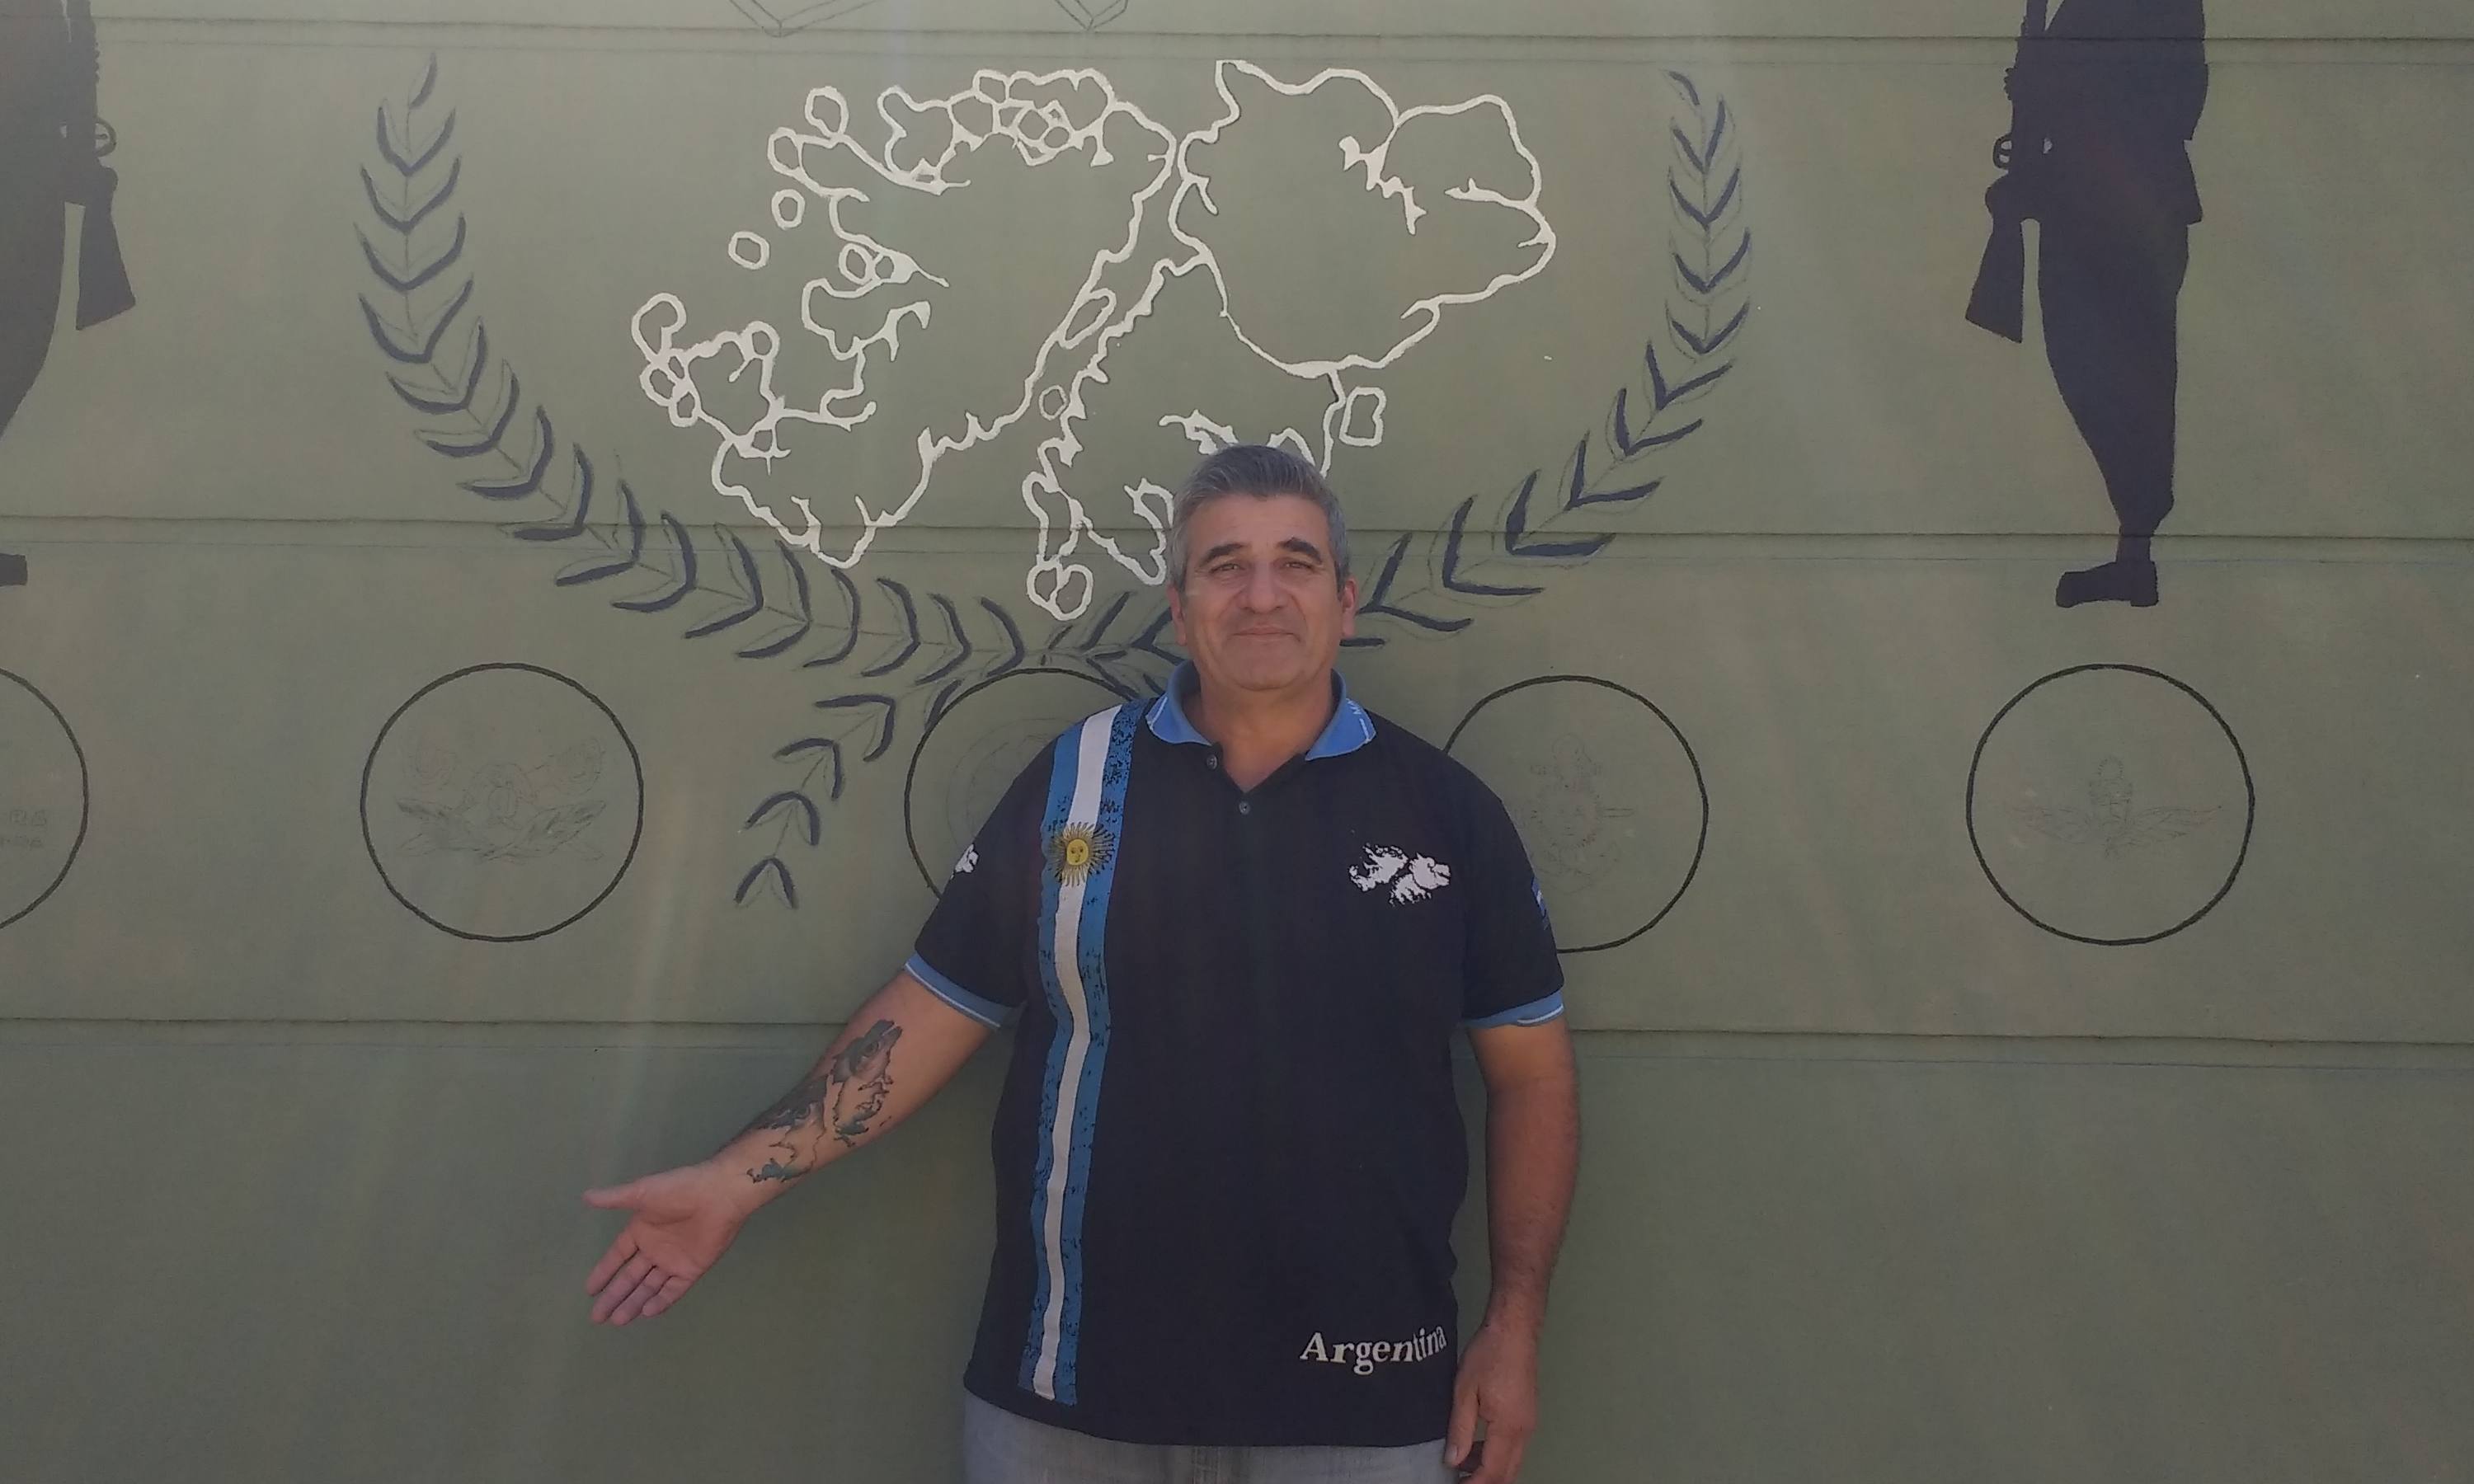 Héctor Mastrulli es ex combatiente y ahora dedica su vida a acercarle ayuda psicológica a otros veteranos que la necesitan. En la foto, exhibe su tatuaje en honor a las islas.